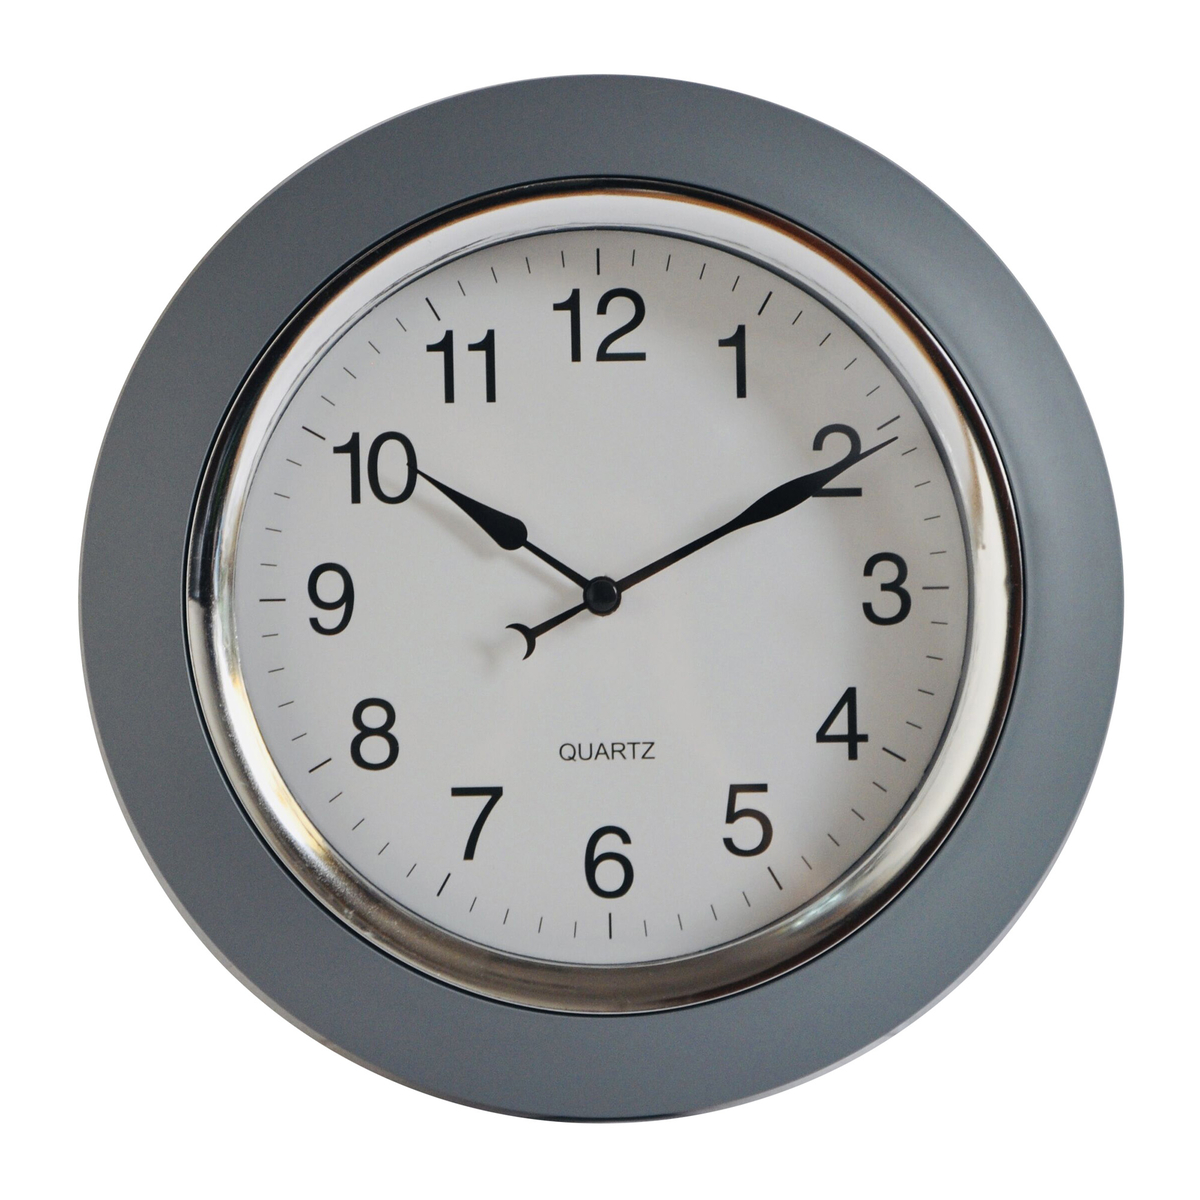 Maple Leaf Home Plastic Wall Clock, Grey, 24.2 cm, BP-R1002G